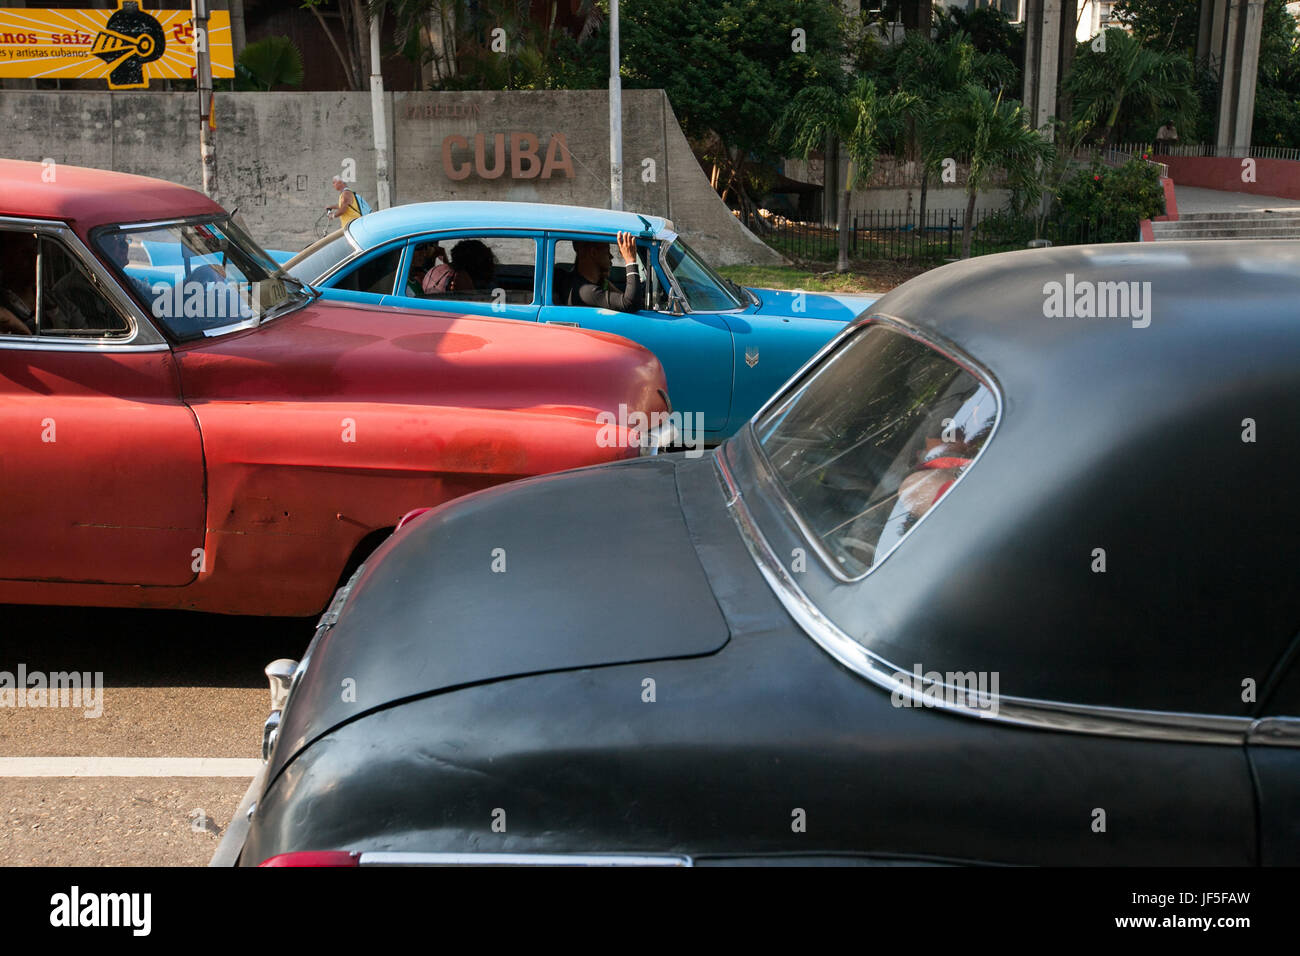 Più colorate, classic American cars linea a street nel centro di Havana. Foto Stock